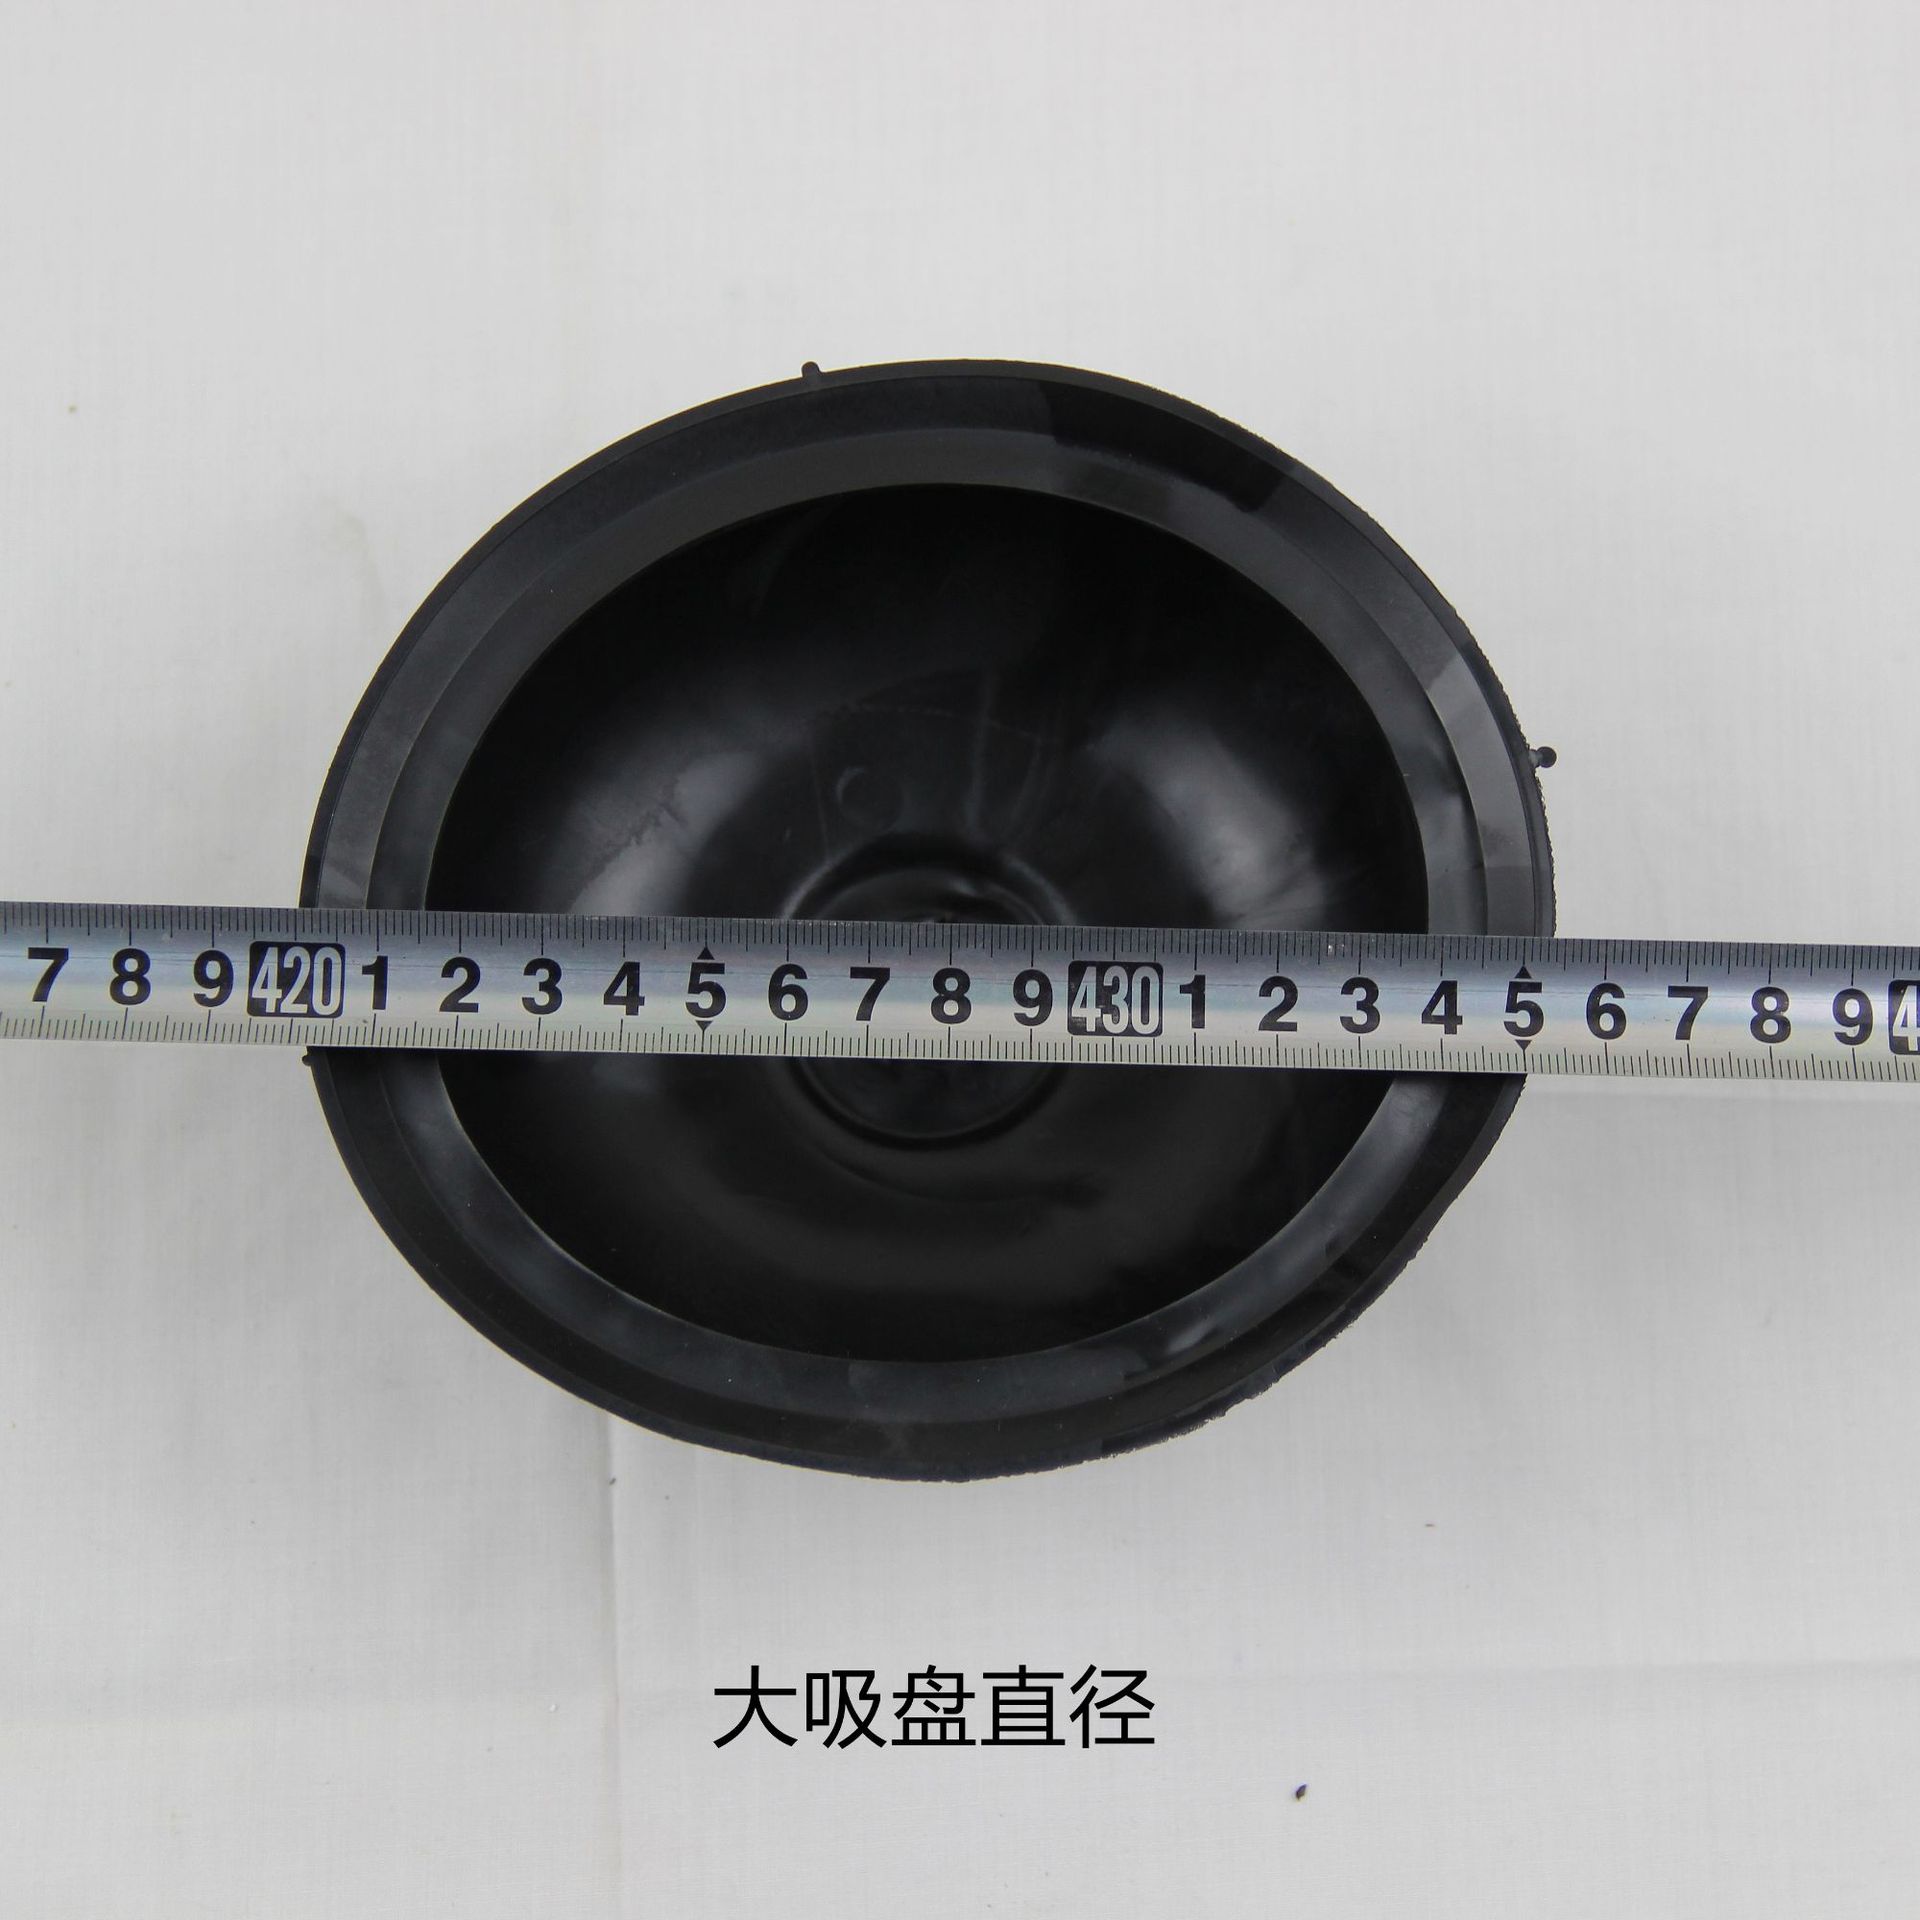 High pressure toilet dredge vacuum pipe dredge